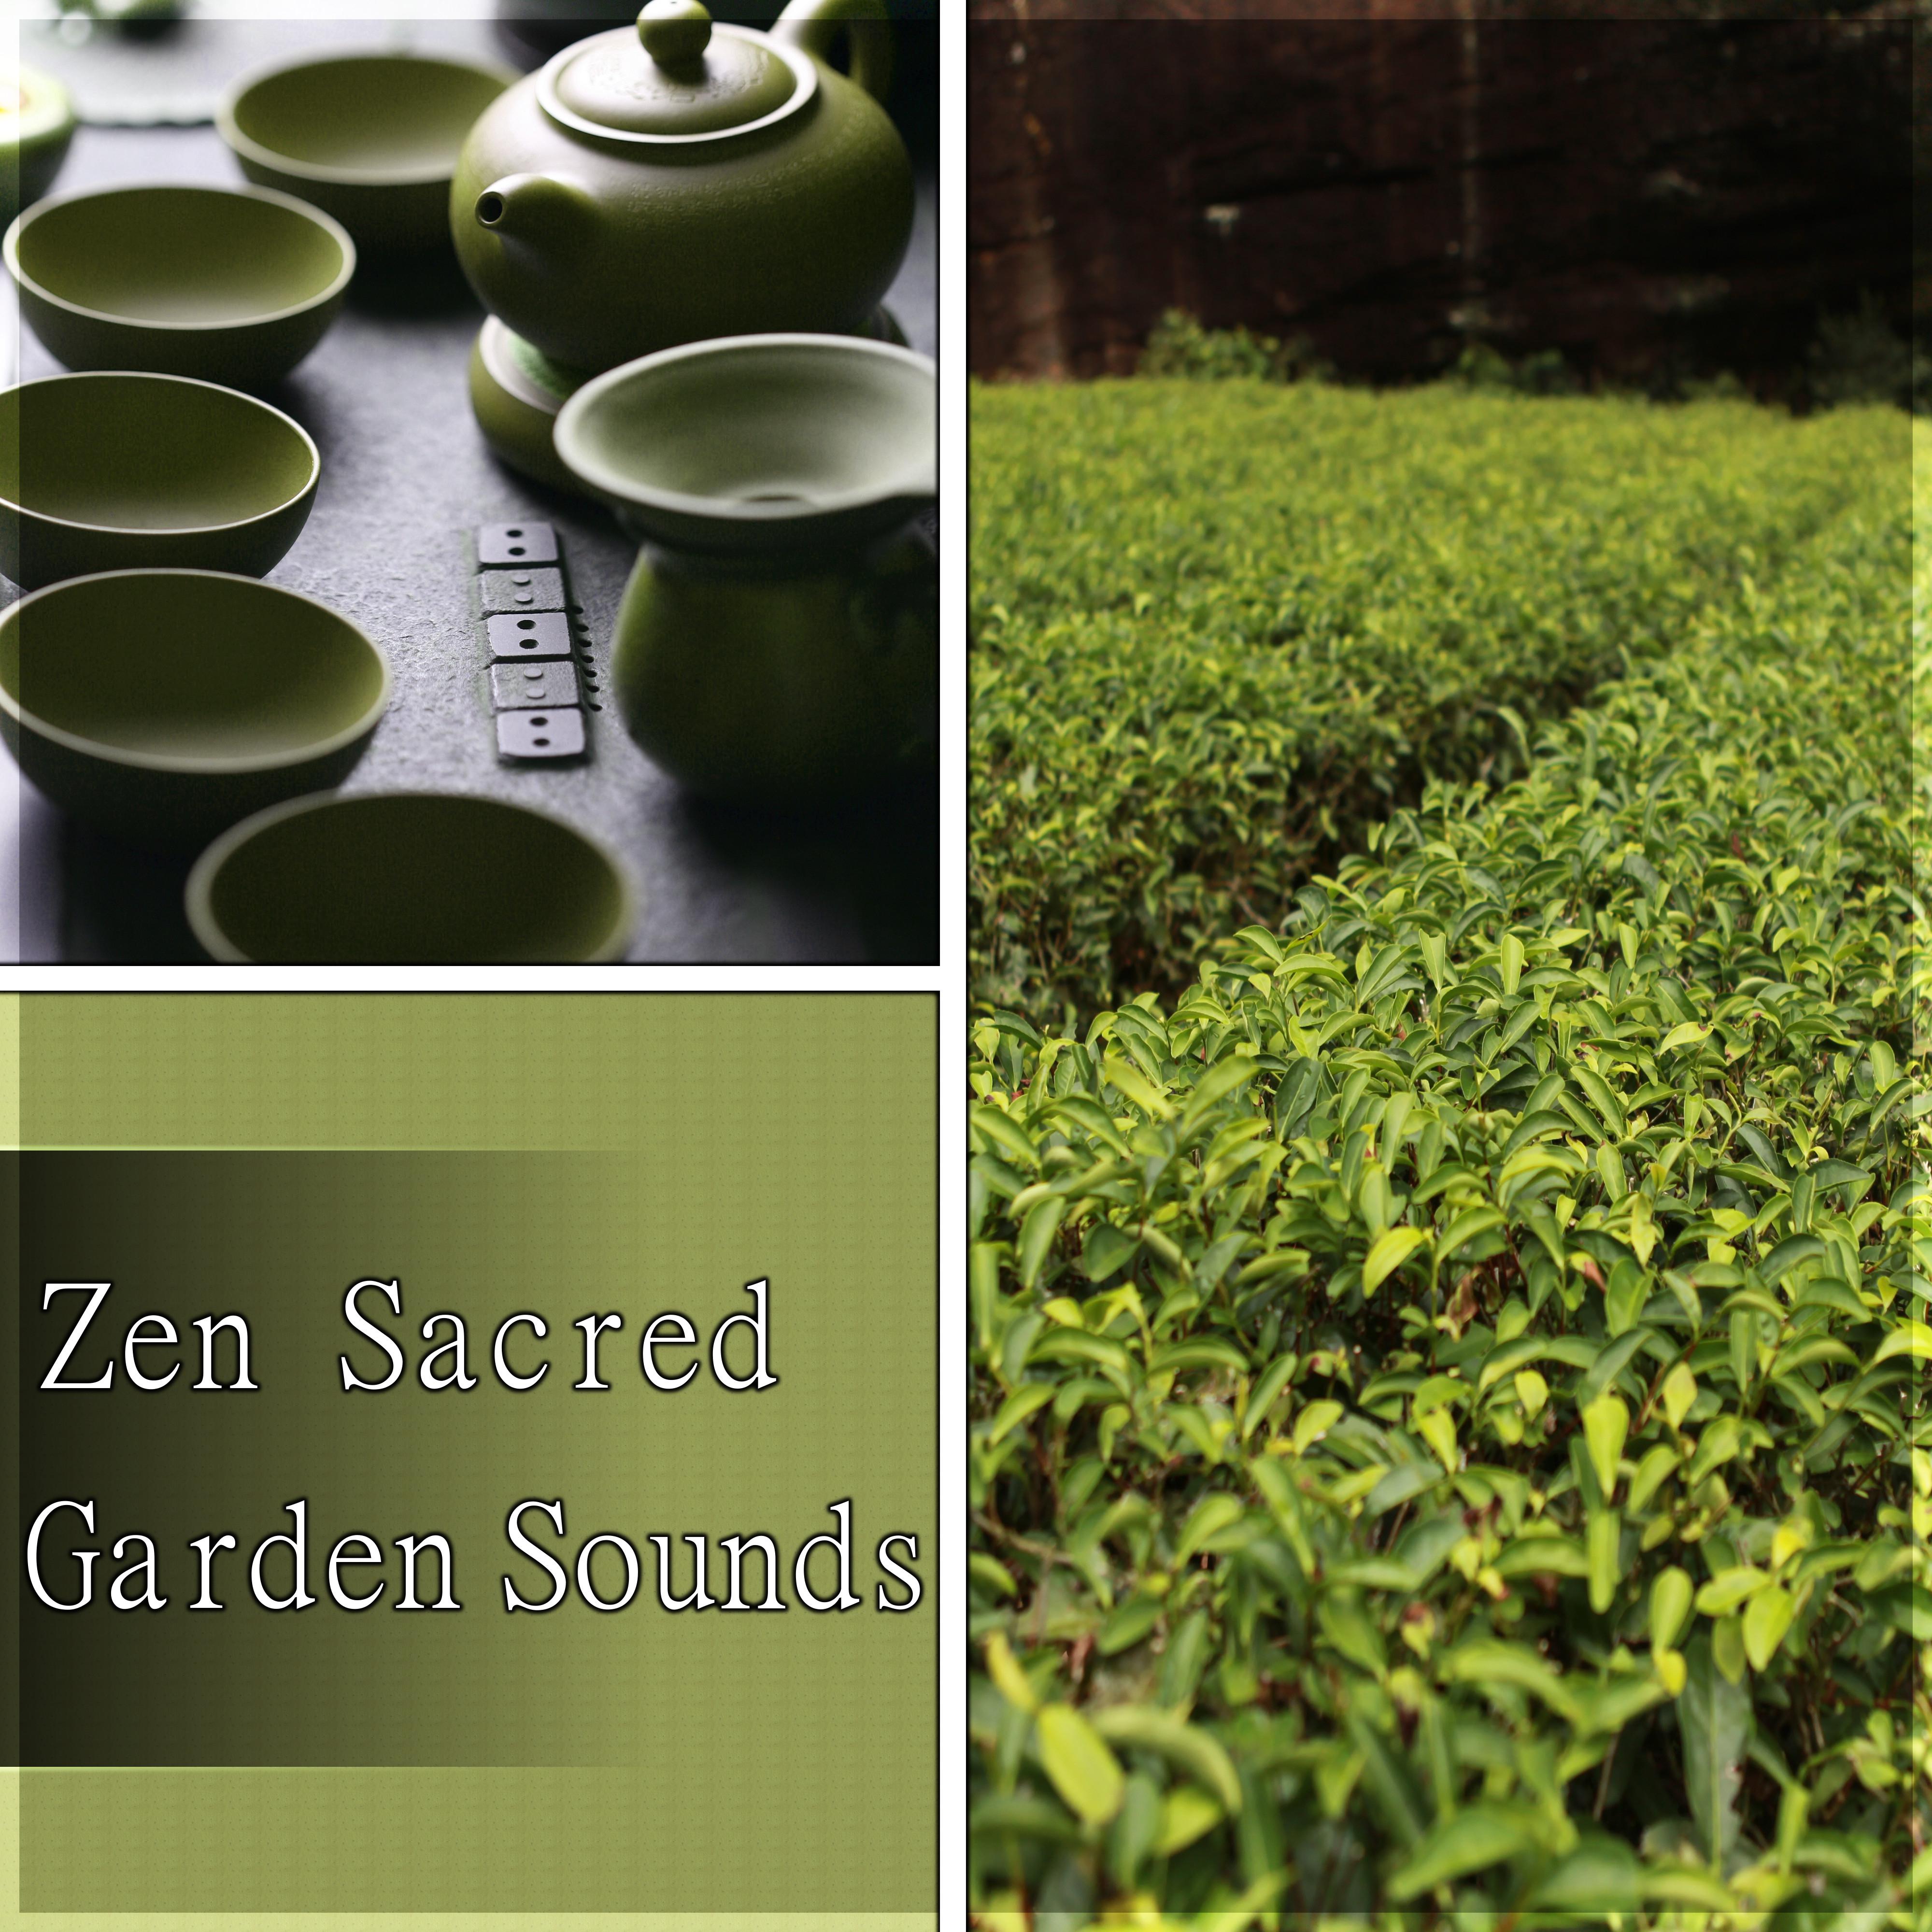 Zen Sacred Garden Sounds - Meditation, Yoga, Wellness, Relaxation, Healing, Beauty, Well Being